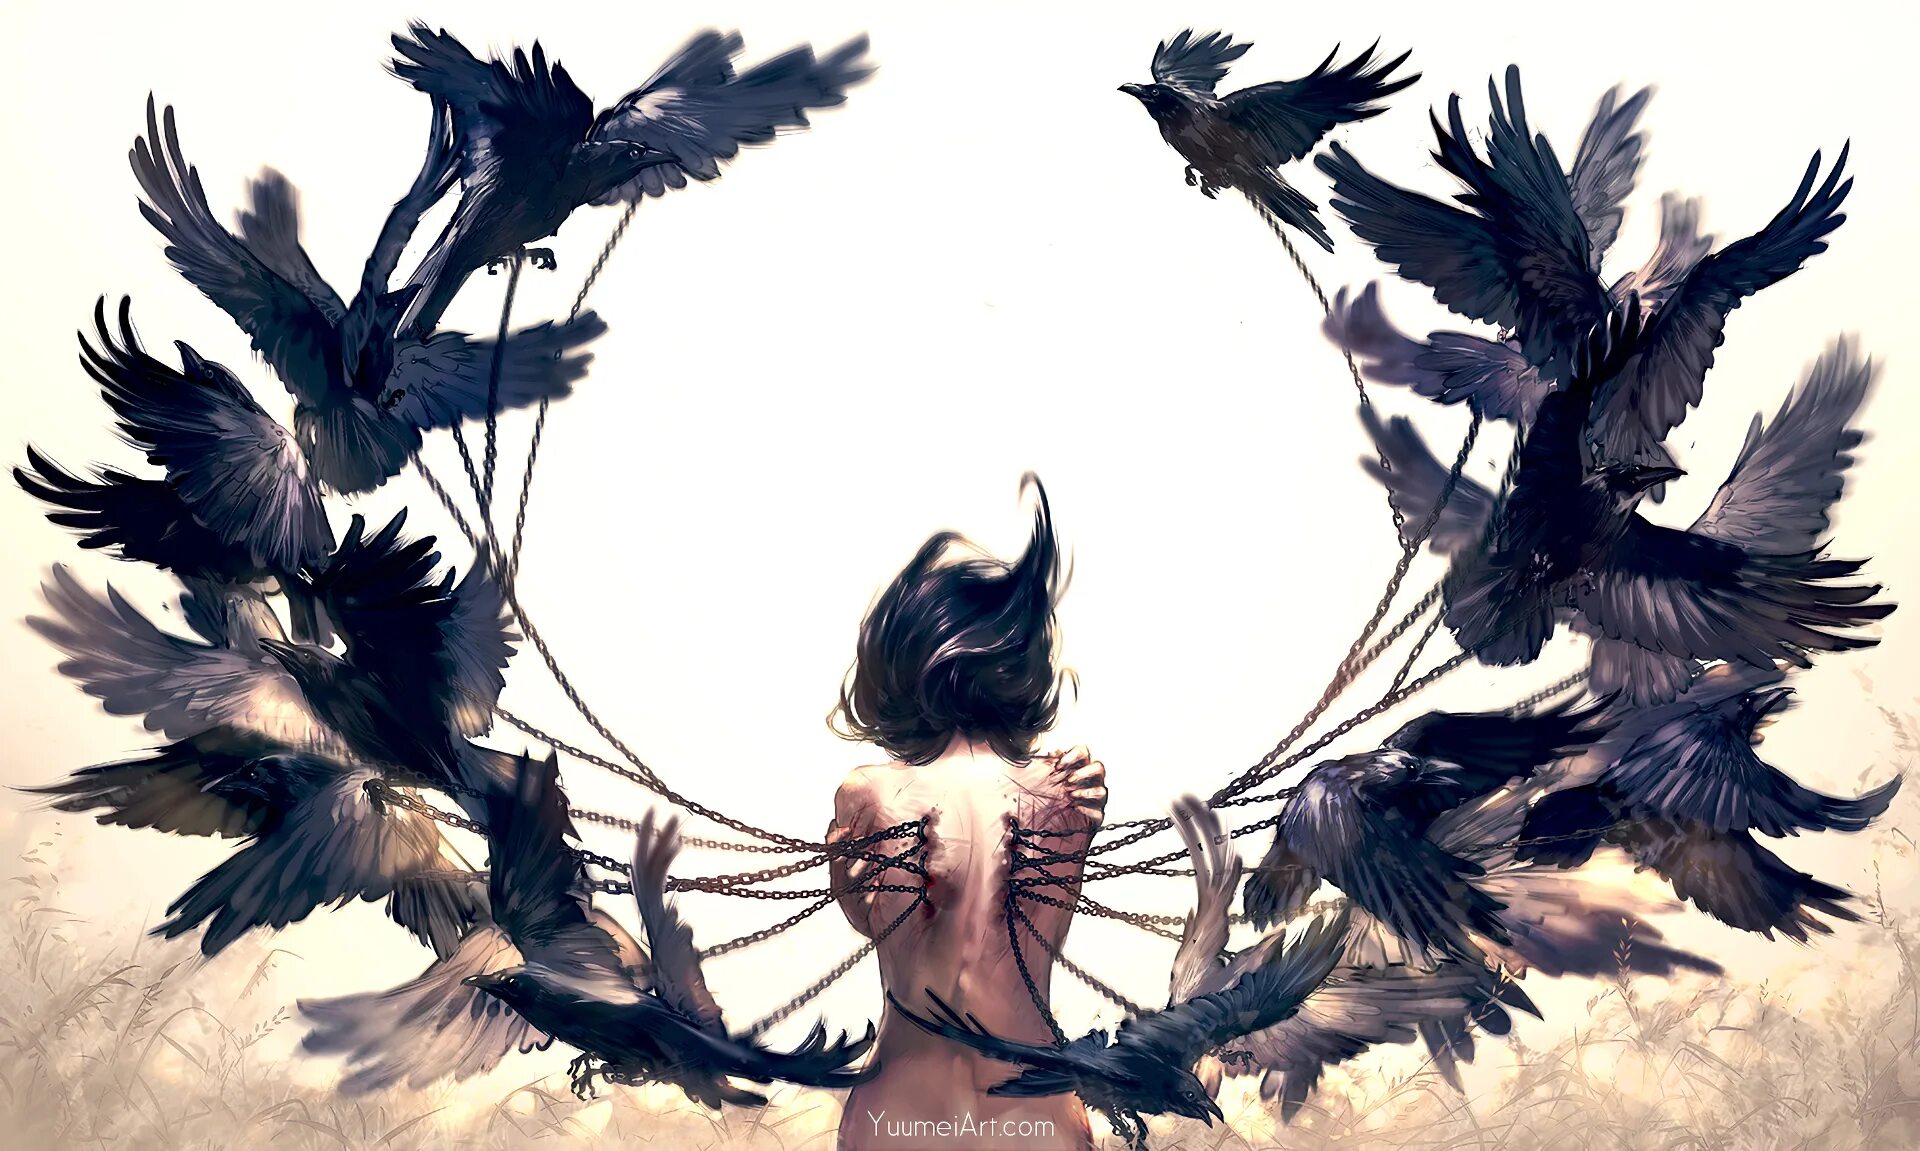 Читать под крылом ворона. Художница yuumei. Женщина с крыльями. Девушка птица. Девушка птица арт.